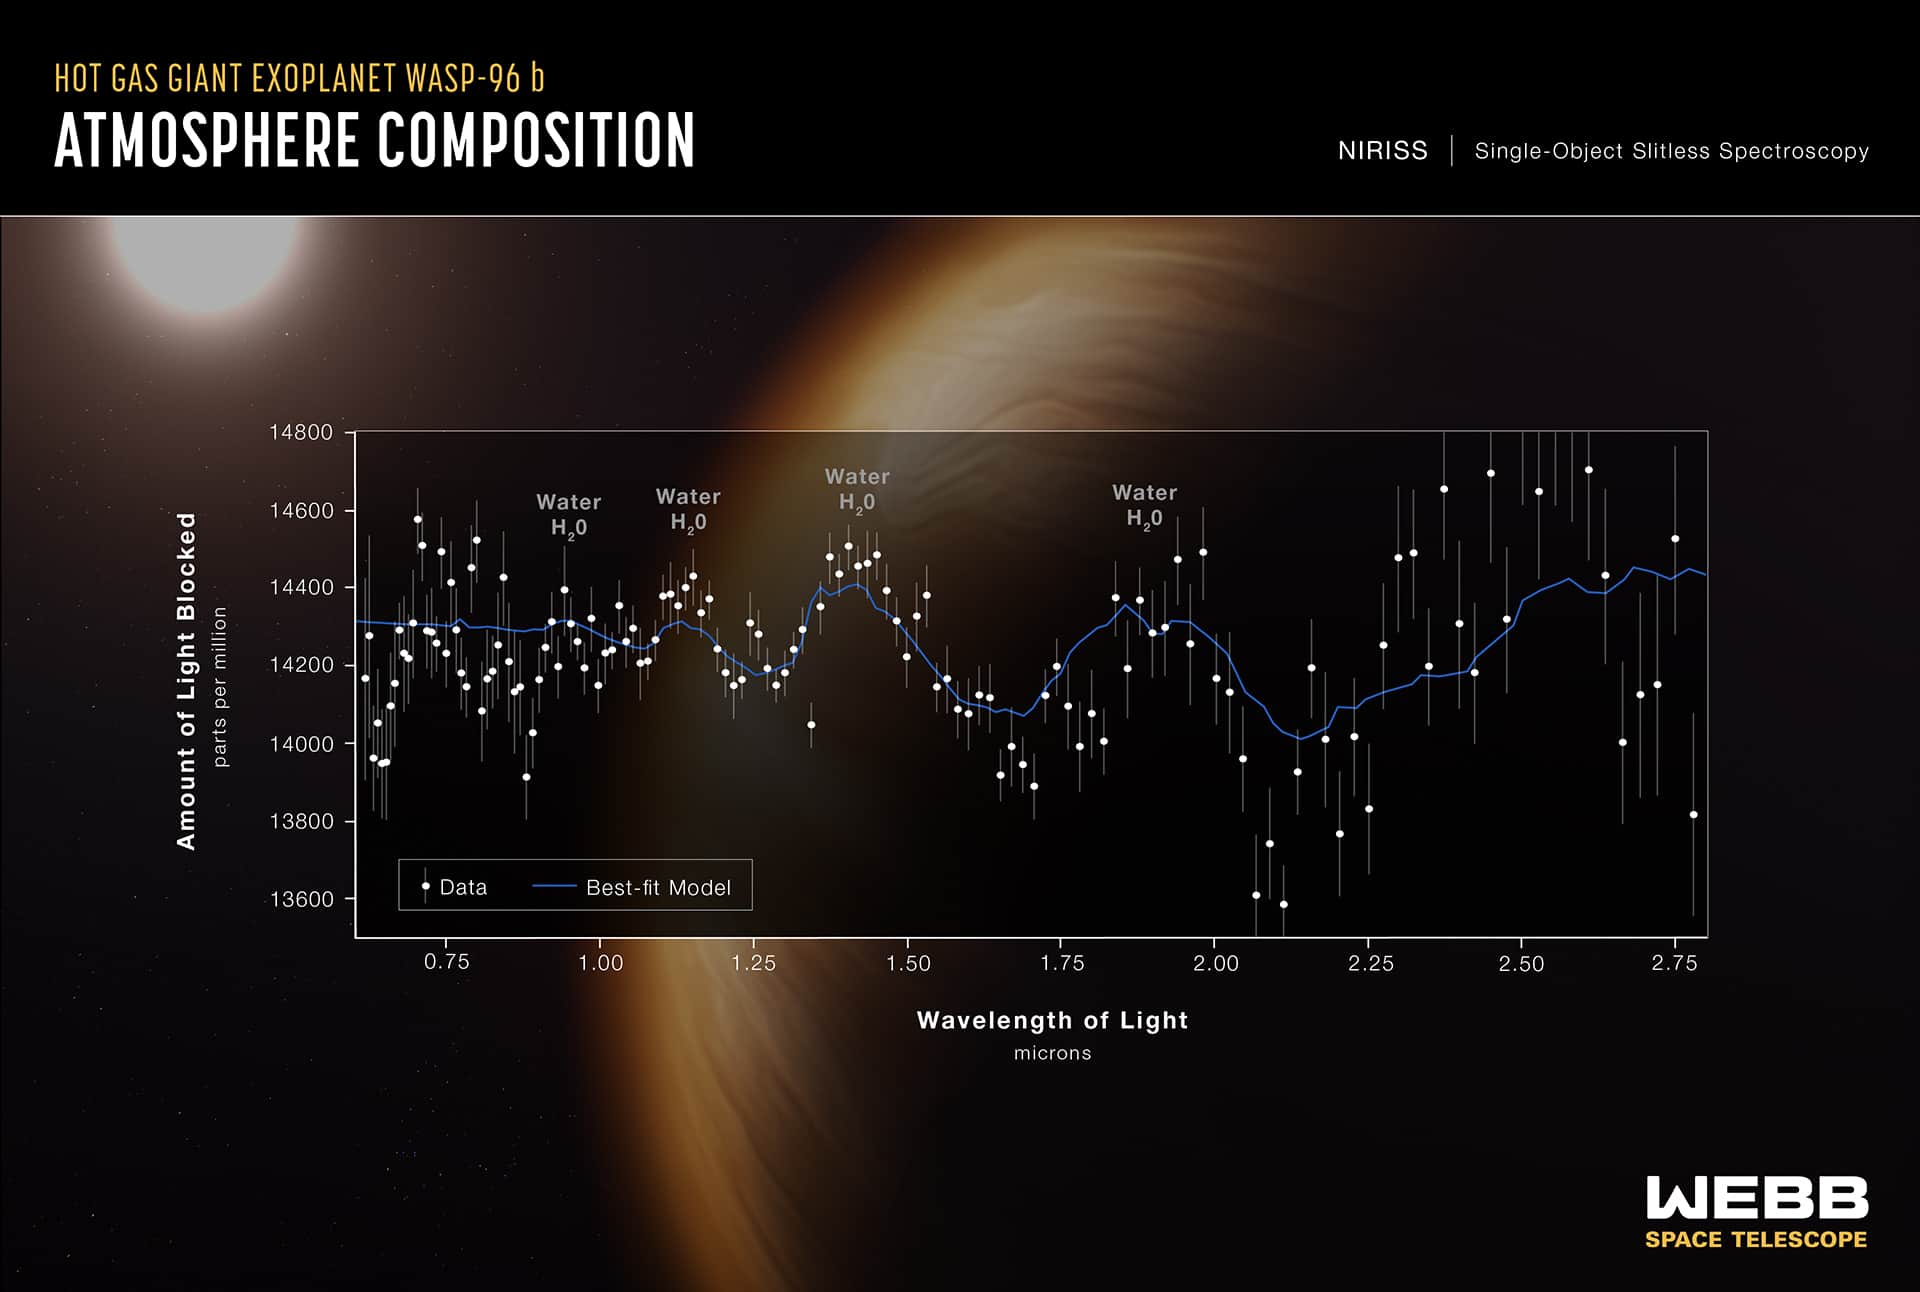 Un espectro de transmisión realizado a partir de una sola observación utilizando el generador de imágenes de infrarrojo cercano y el espectrógrafo sin rendija (NIRISS) de Webb revela las características atmosféricas del exoplaneta gigante de gas caliente WASP-96 b.